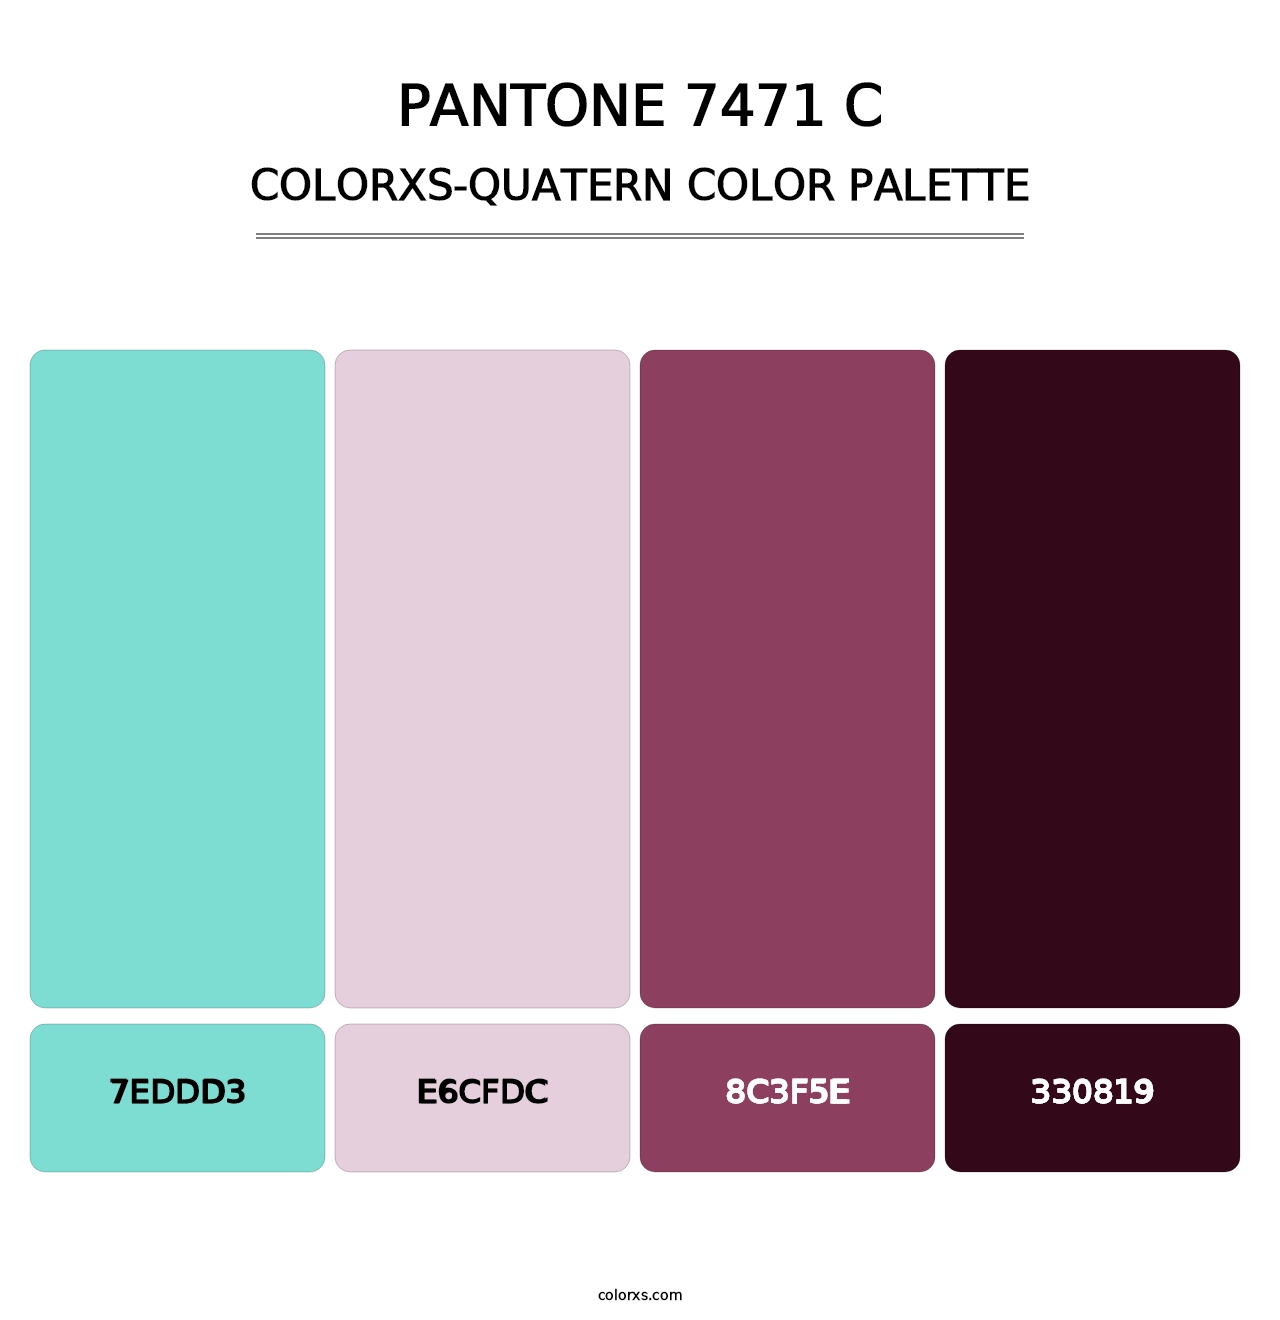 PANTONE 7471 C - Colorxs Quatern Palette